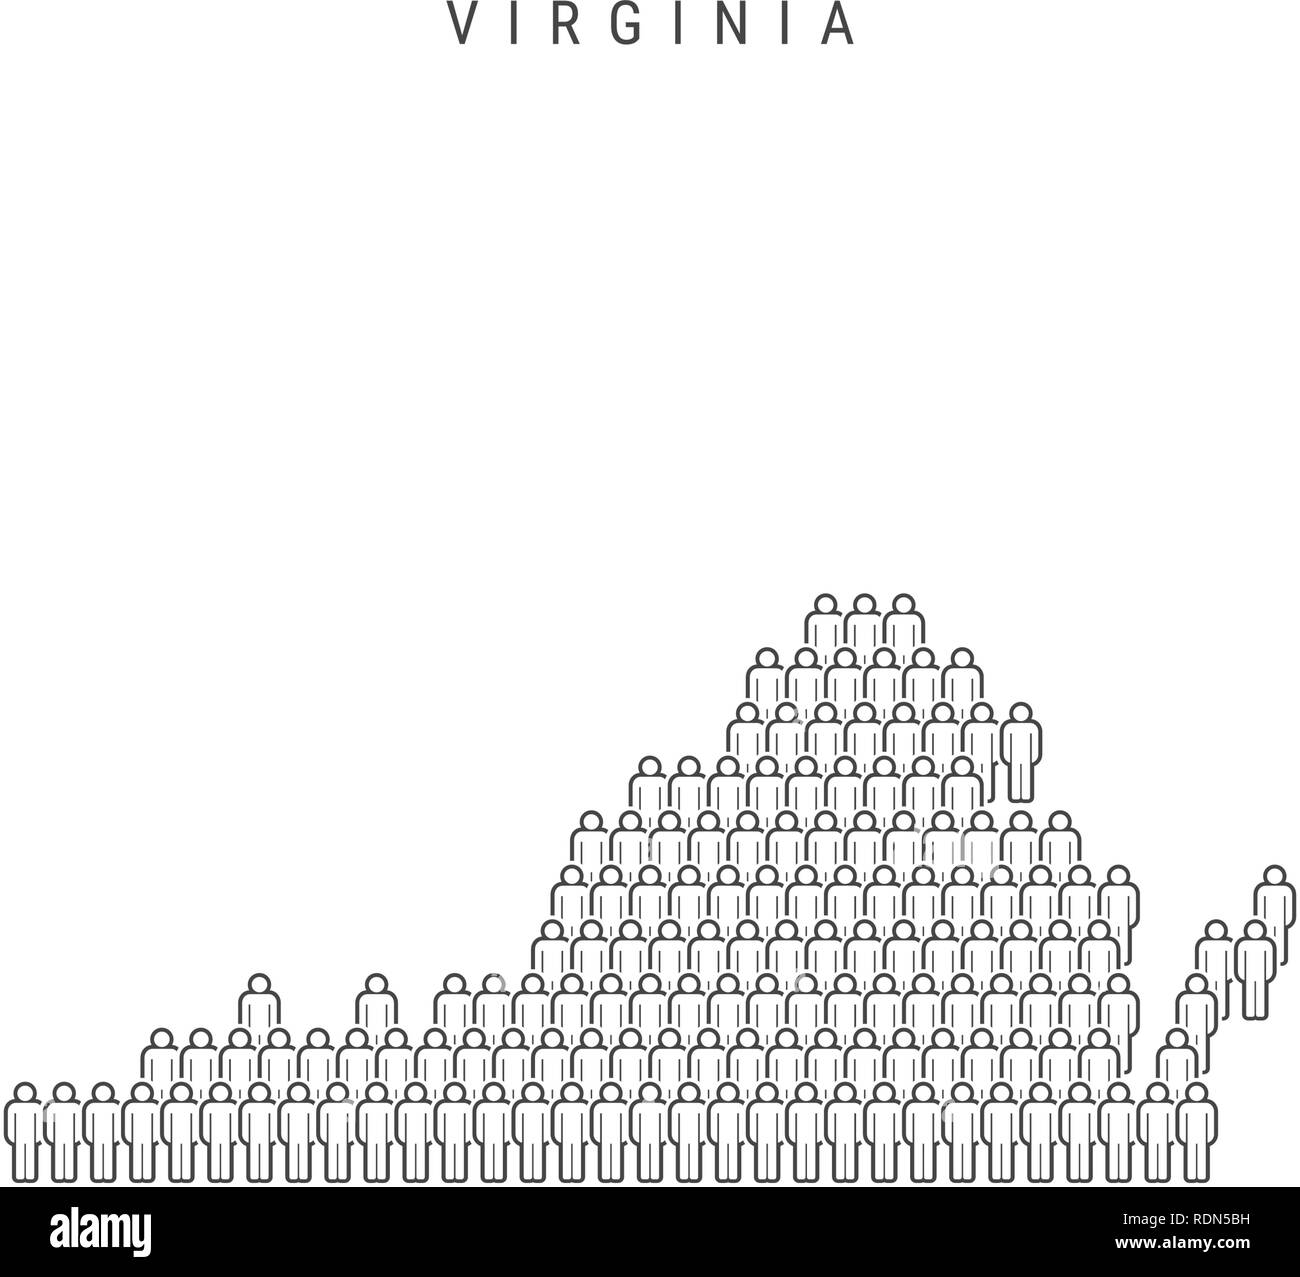 Vector Mappa di persone della Virginia, Stato degli USA. Silhouette stilizzata, persone folla. La popolazione di Virginia Illustrazione Vettoriale